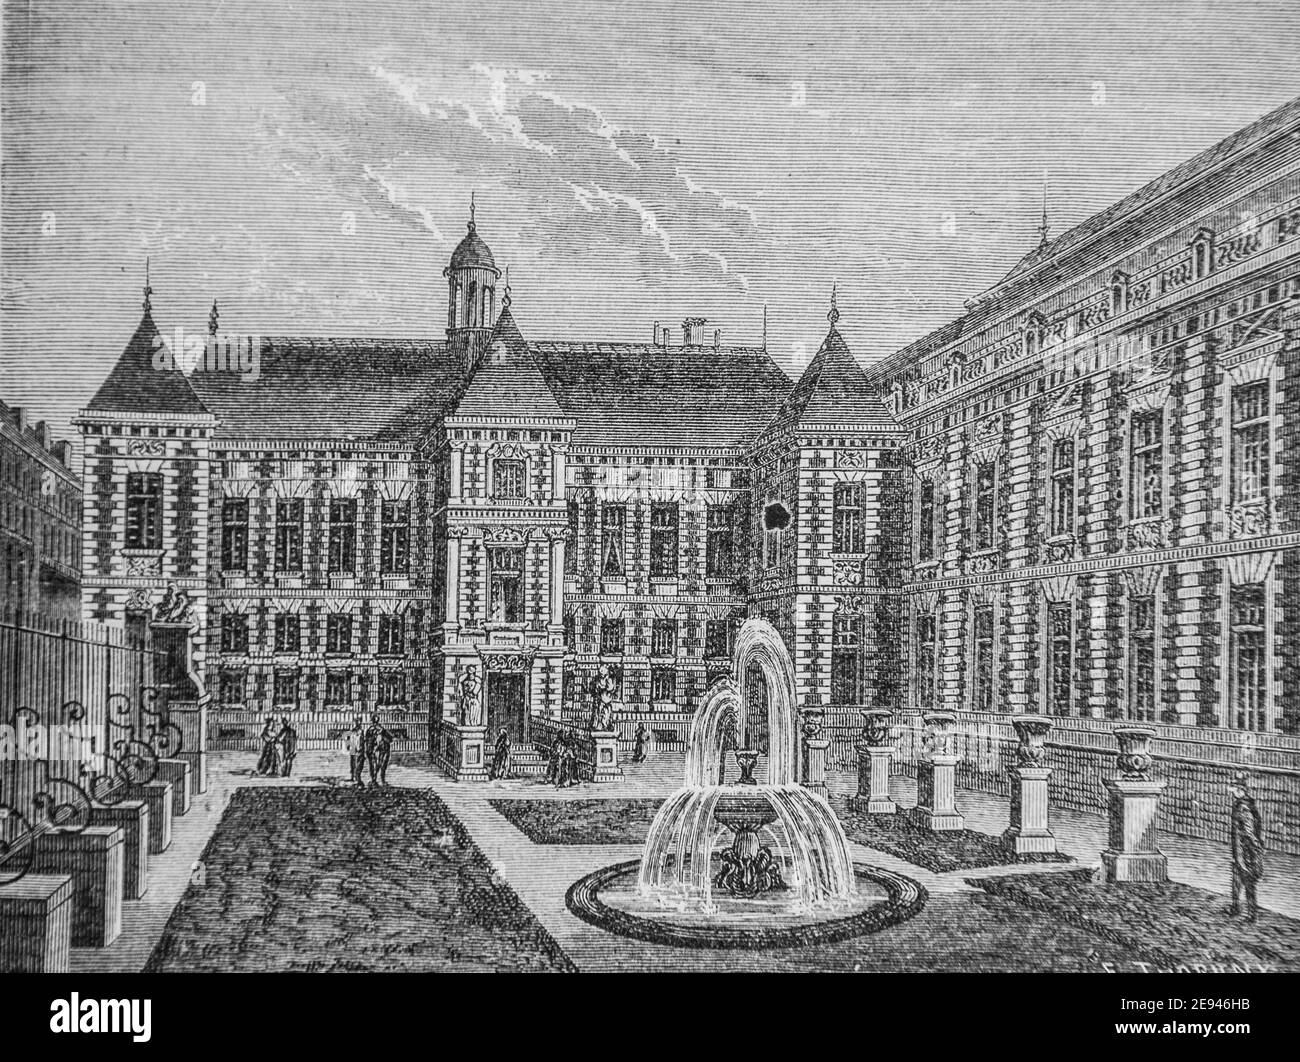 ancien palais mazarin,aujourd'hui bibliotheque imperiale 1500-1600, histoire populaire de frrance par henri martin,editeur furne 1860 Stock Photo